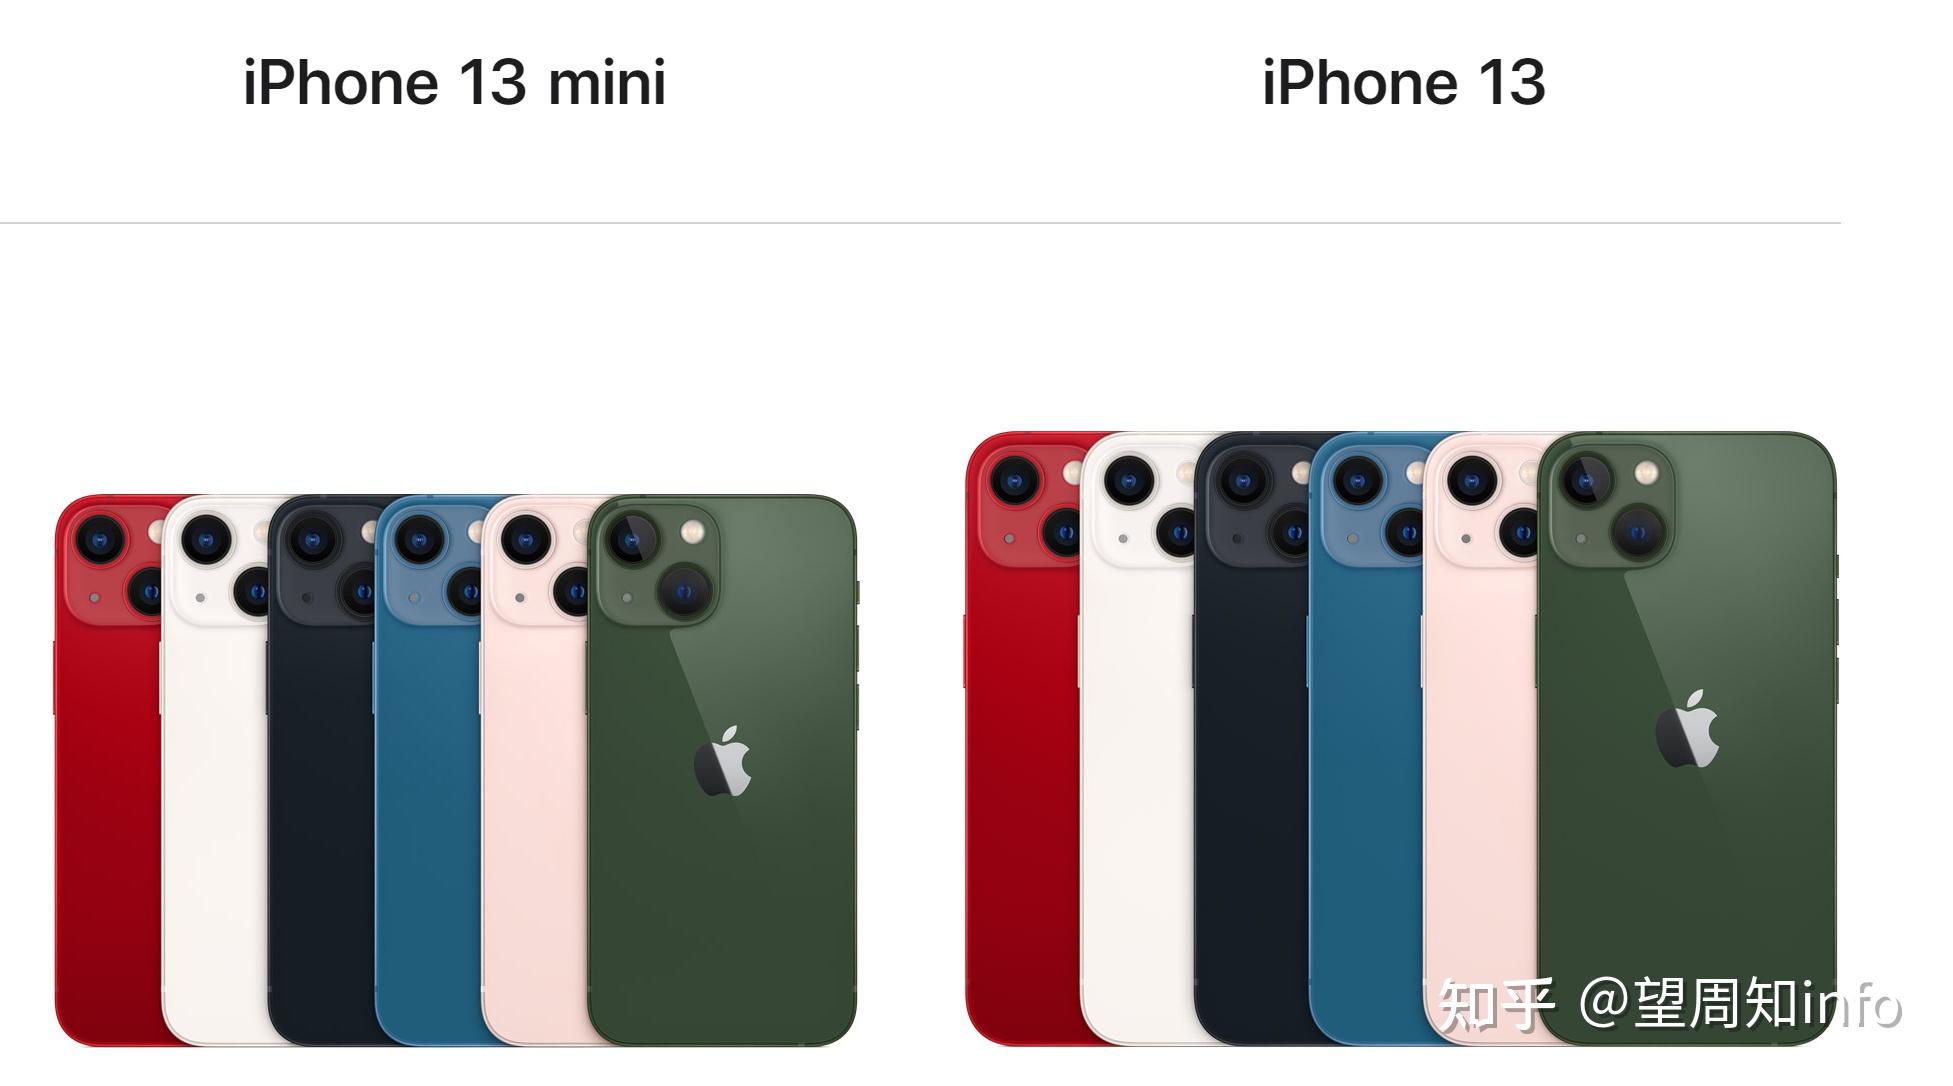 iphone 13全系绿了,高中低产品线也更明显了